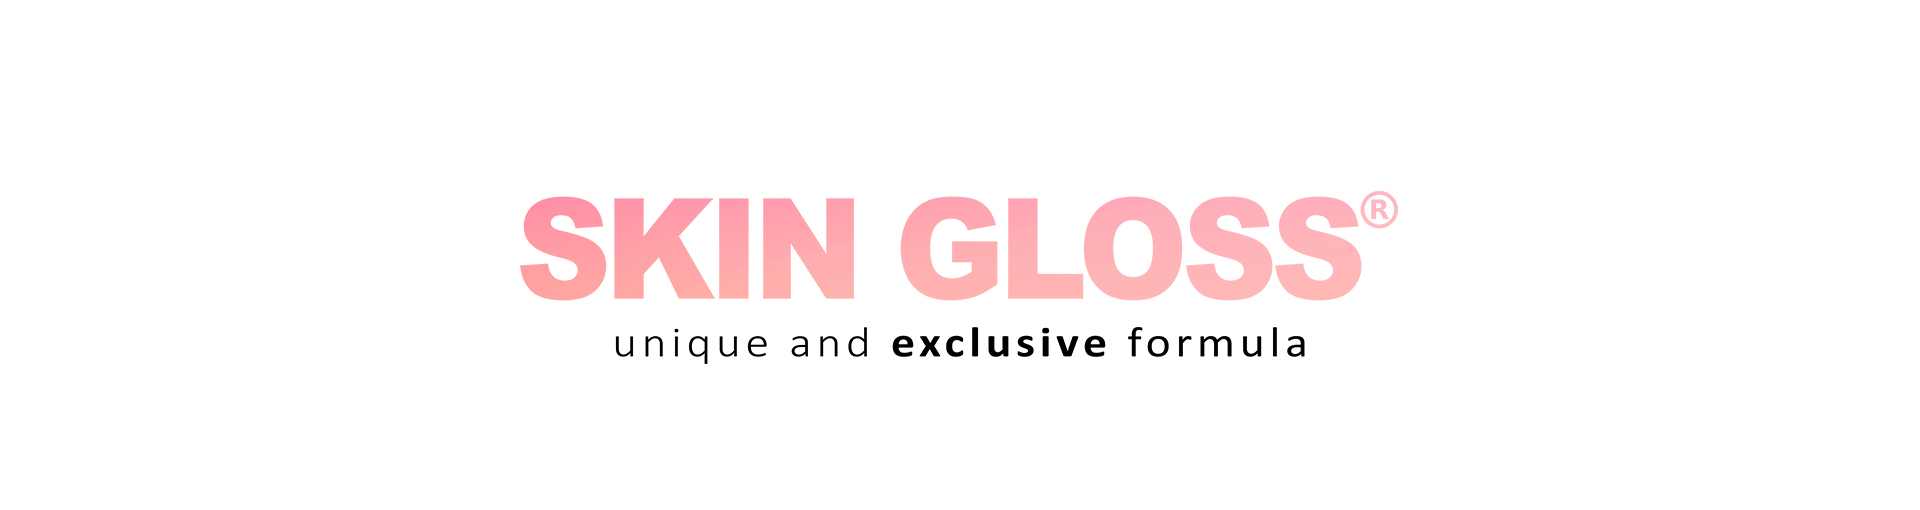 Skin Gloss trade mark